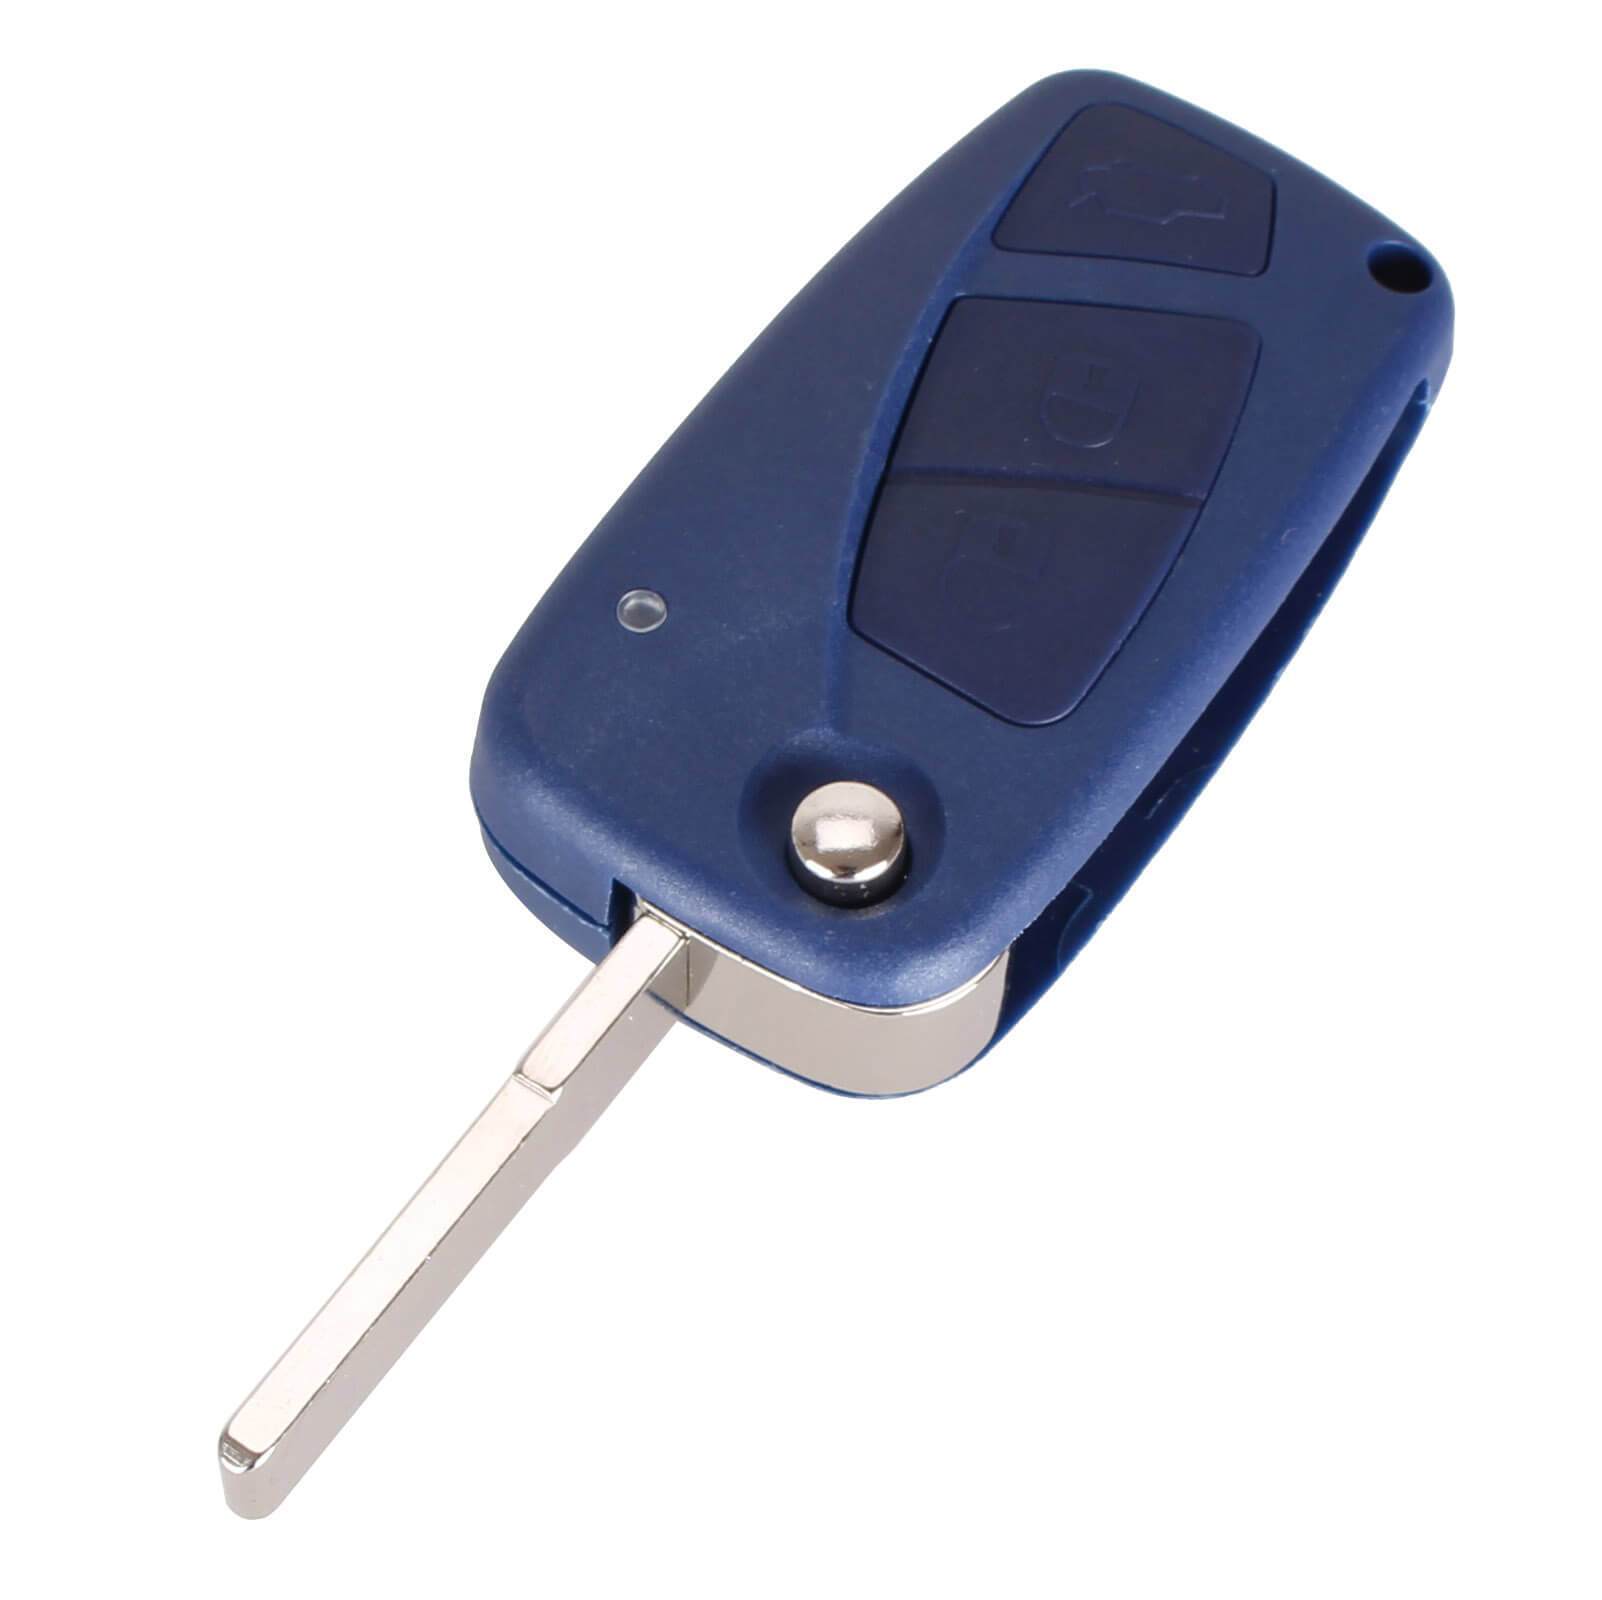 Kék színű, 3 gombos Peugeot kulcsház, bicskakulcs nyers kulcsszárral.